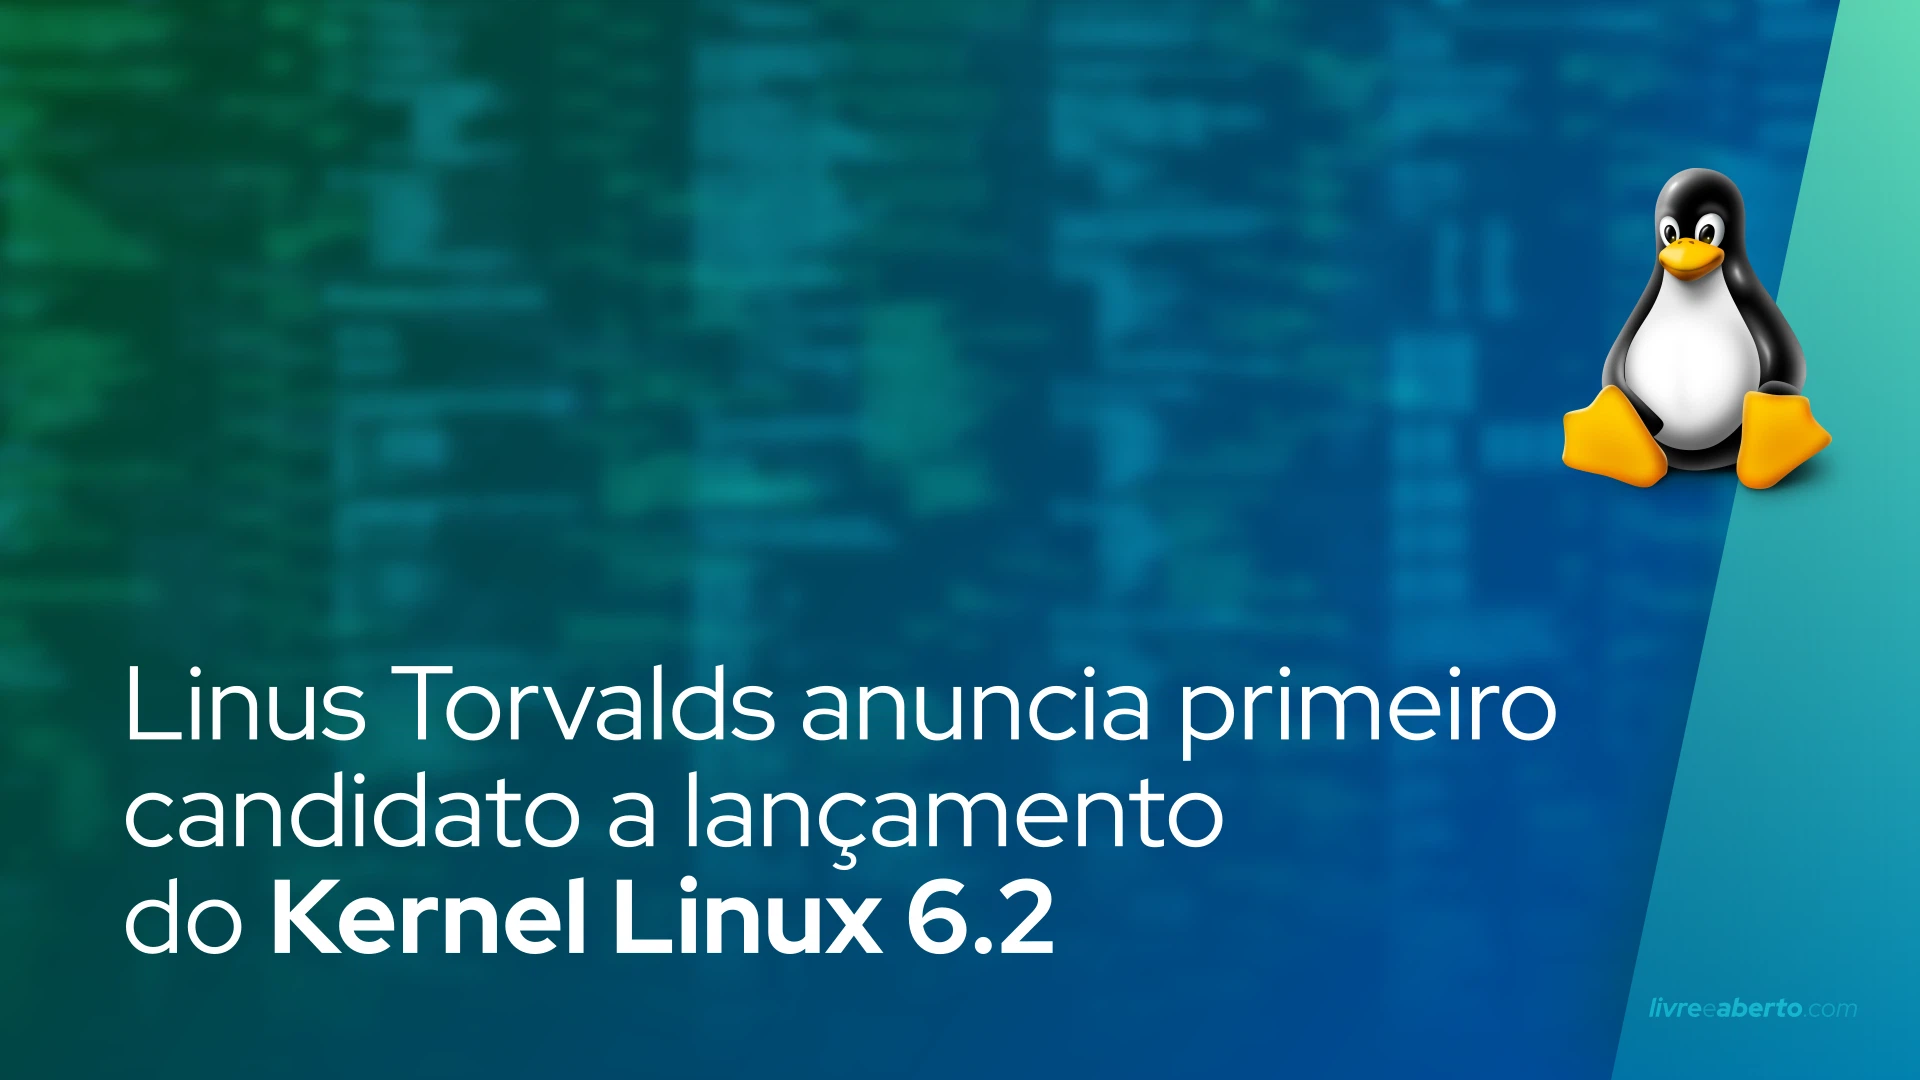 Linus Torvalds anuncia primeiro candidato a lançamento do Kernel Linux 6.2